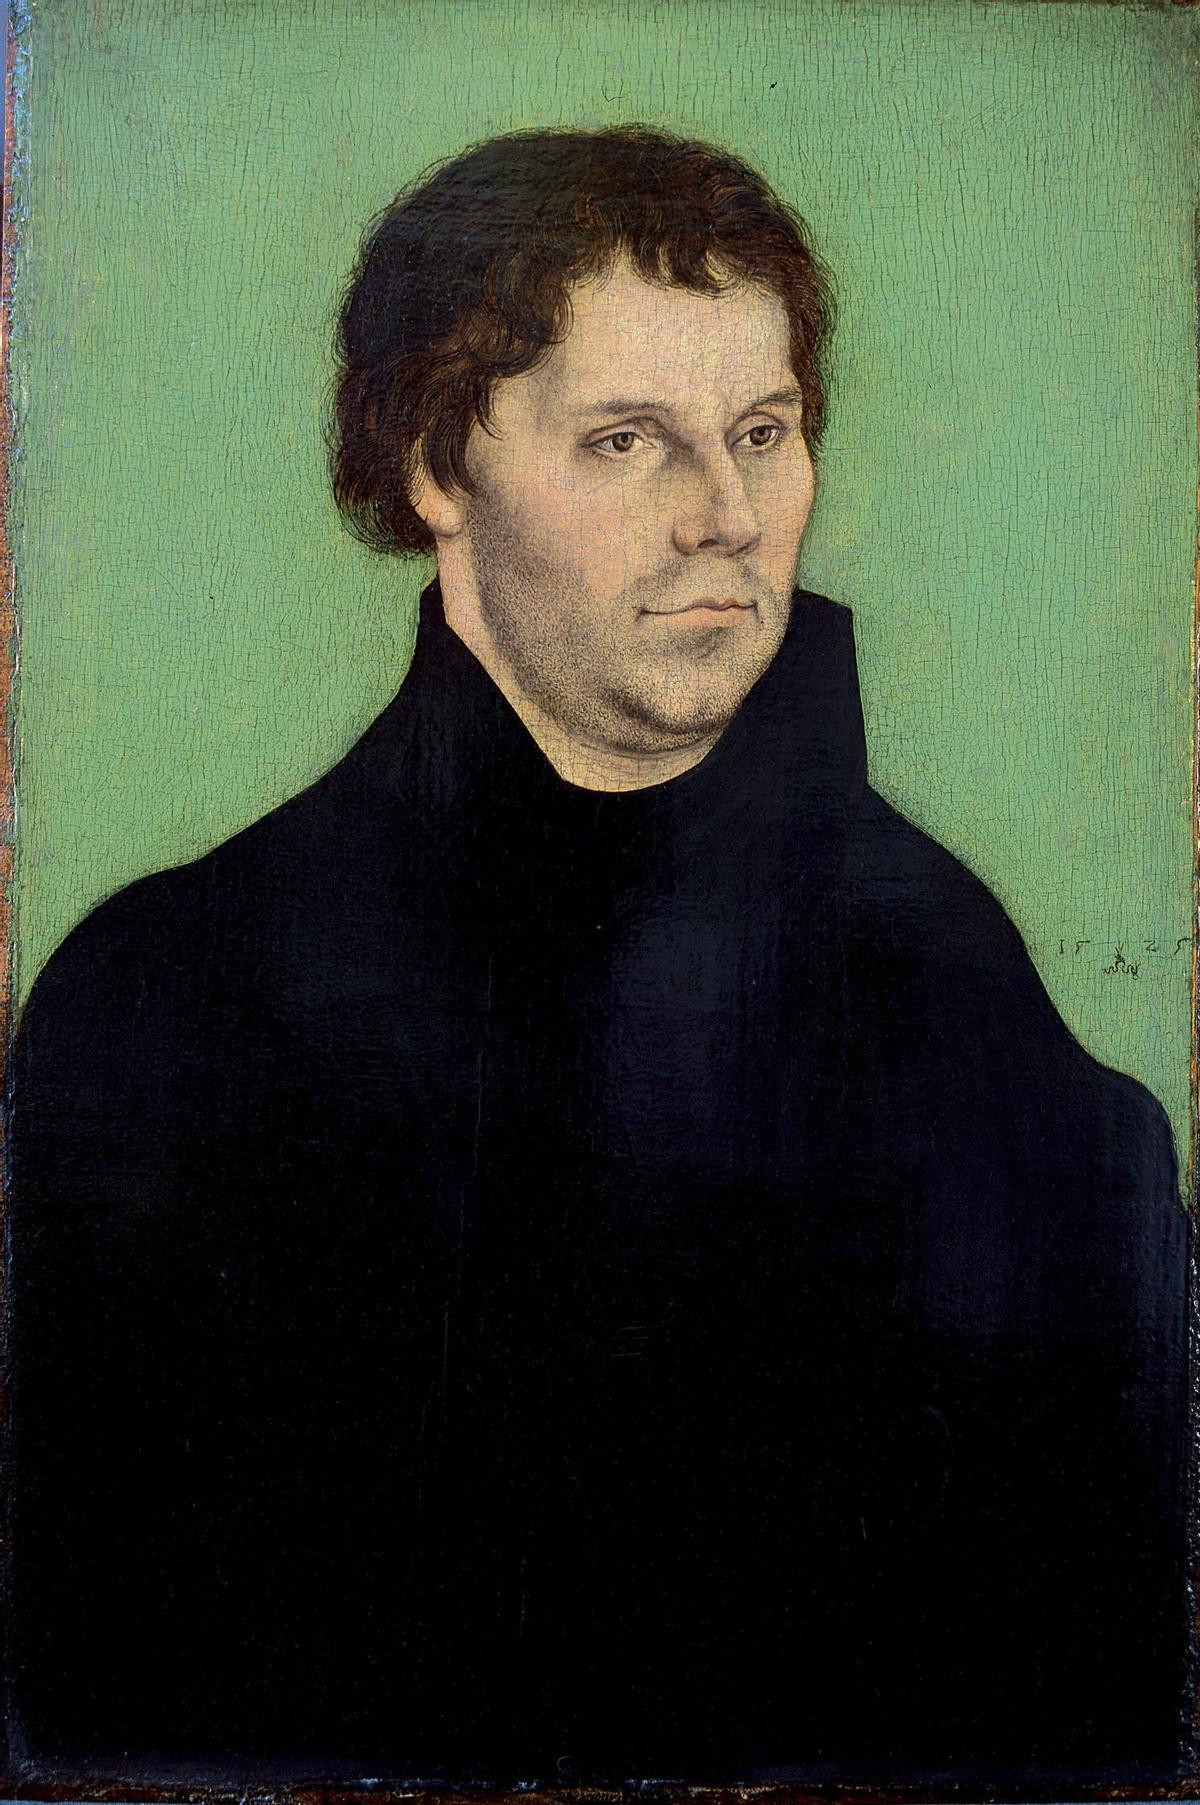 Retrato de Martín Lutero, contra cuyo credo se erigió Roma para mostrar los logros del catolicismo.